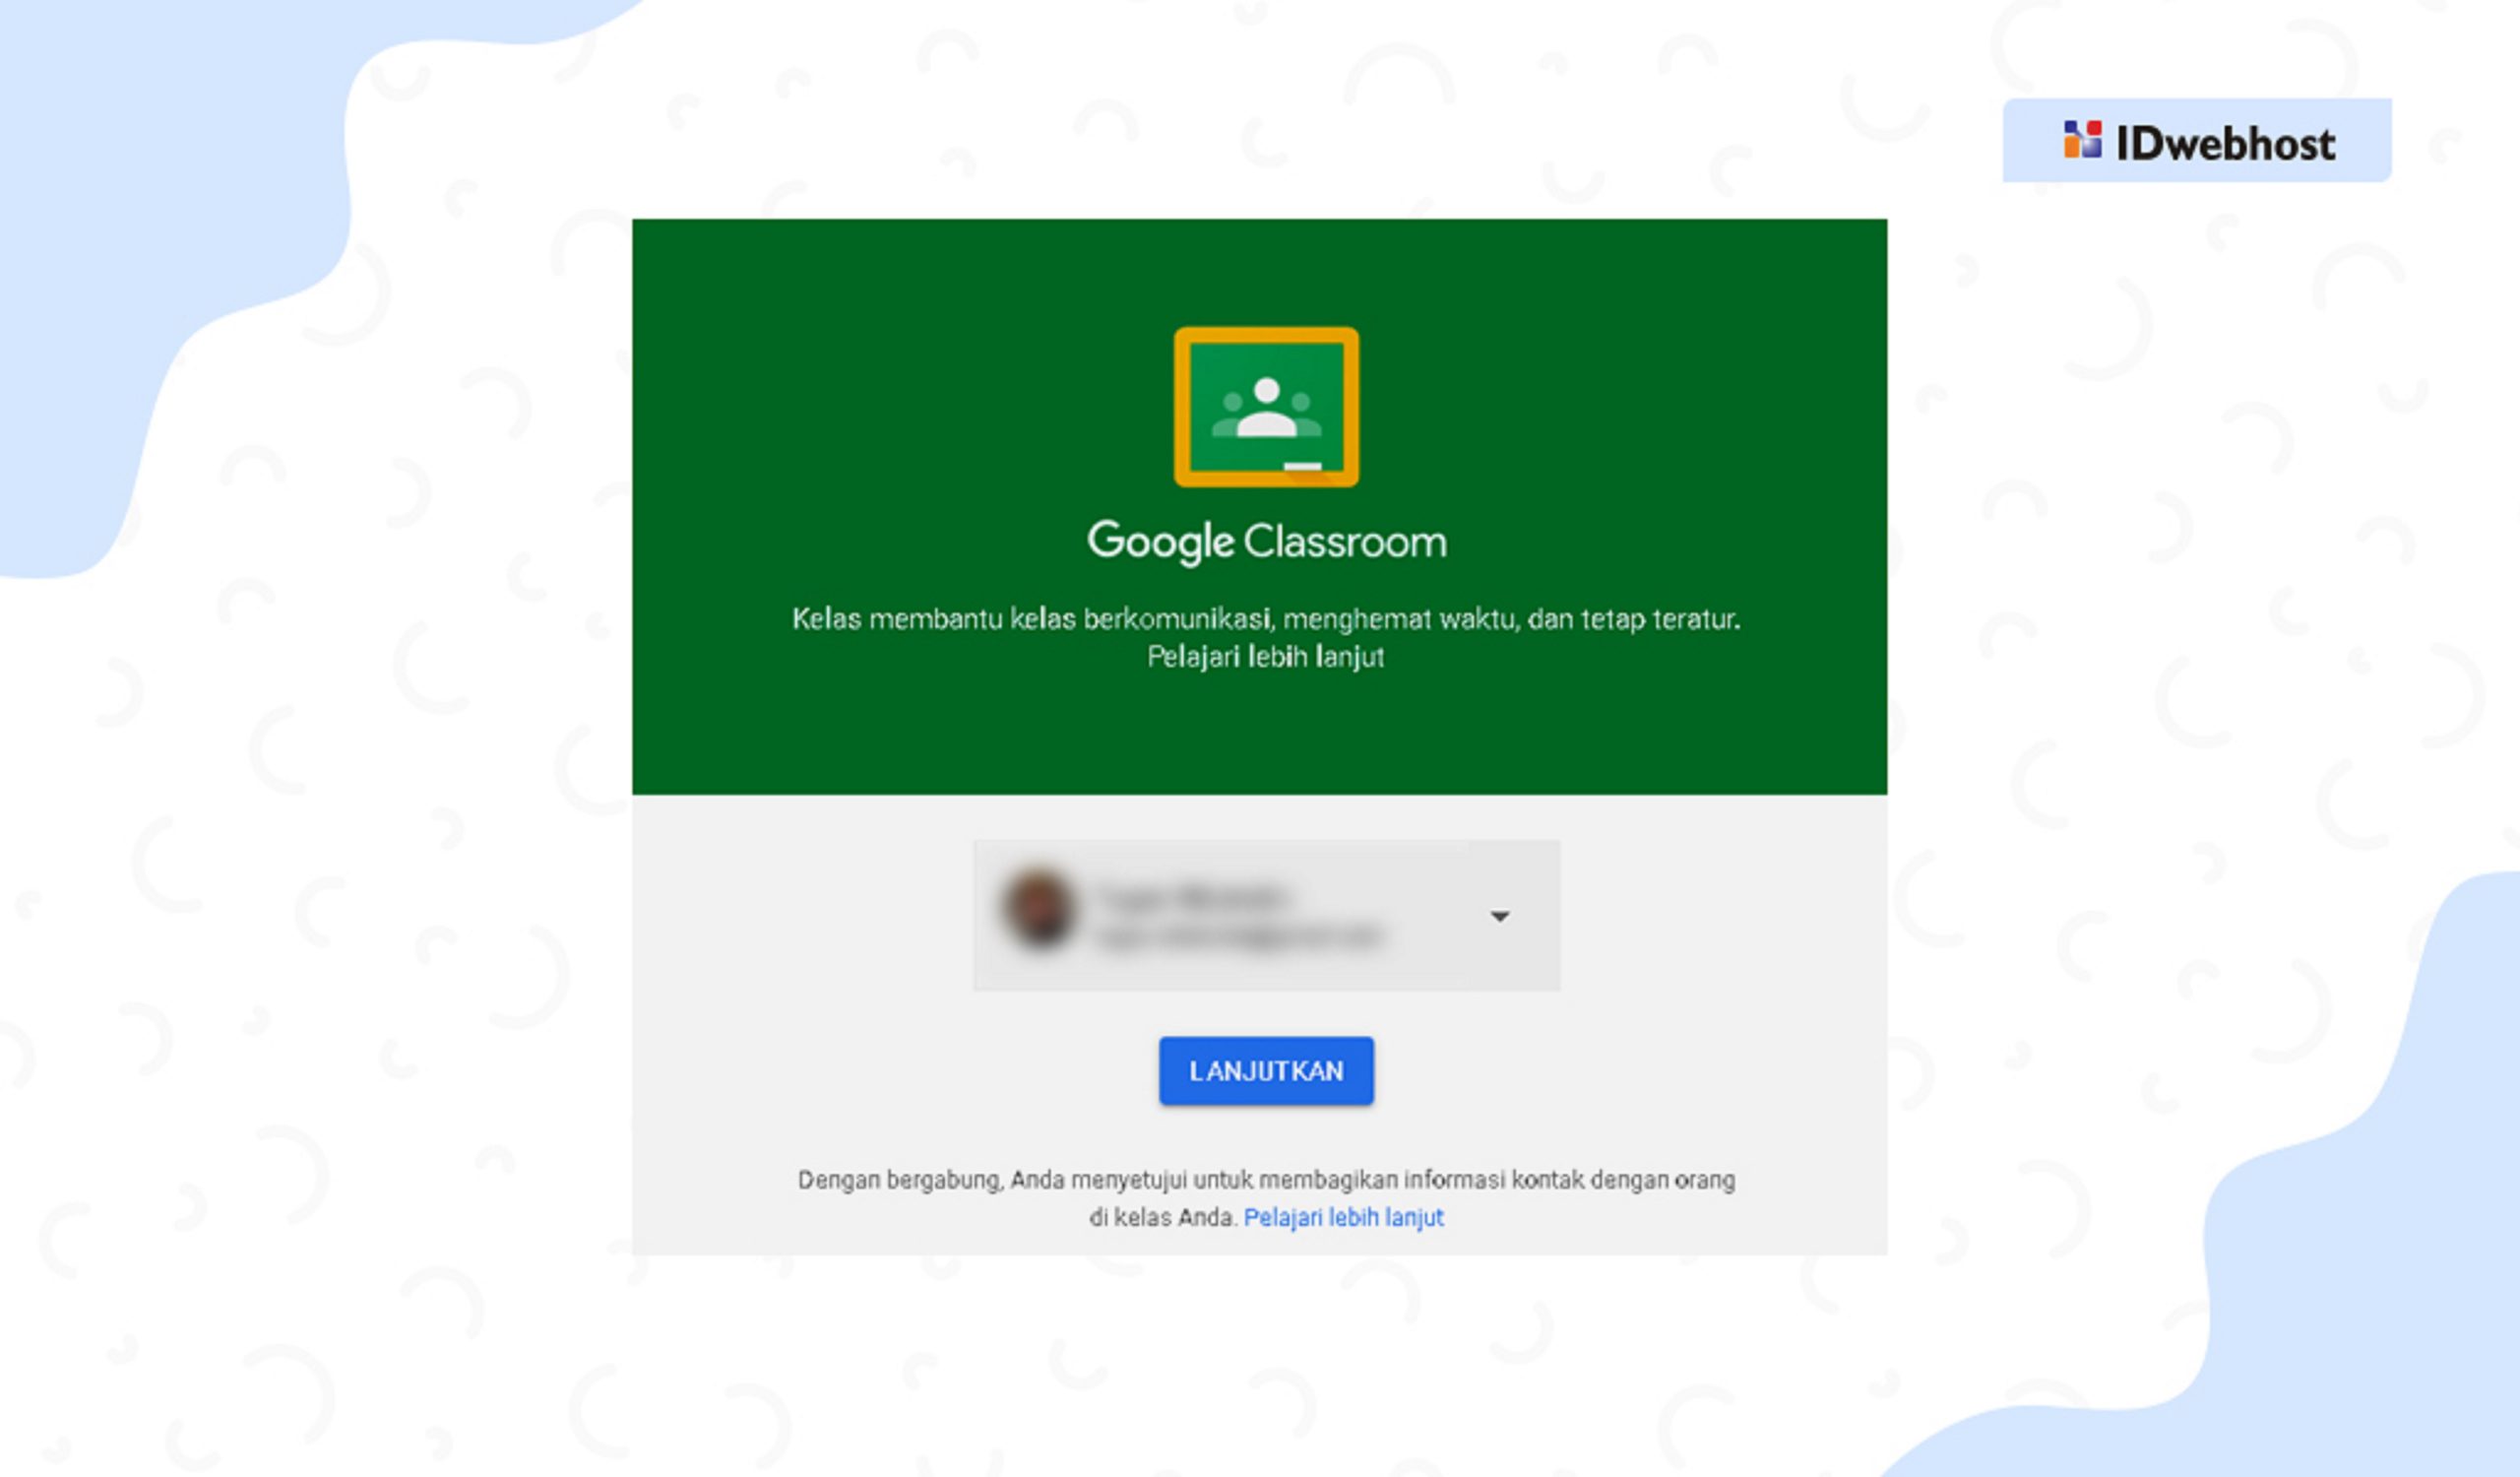 Google Classroom: Semua yang perlu anda tahu